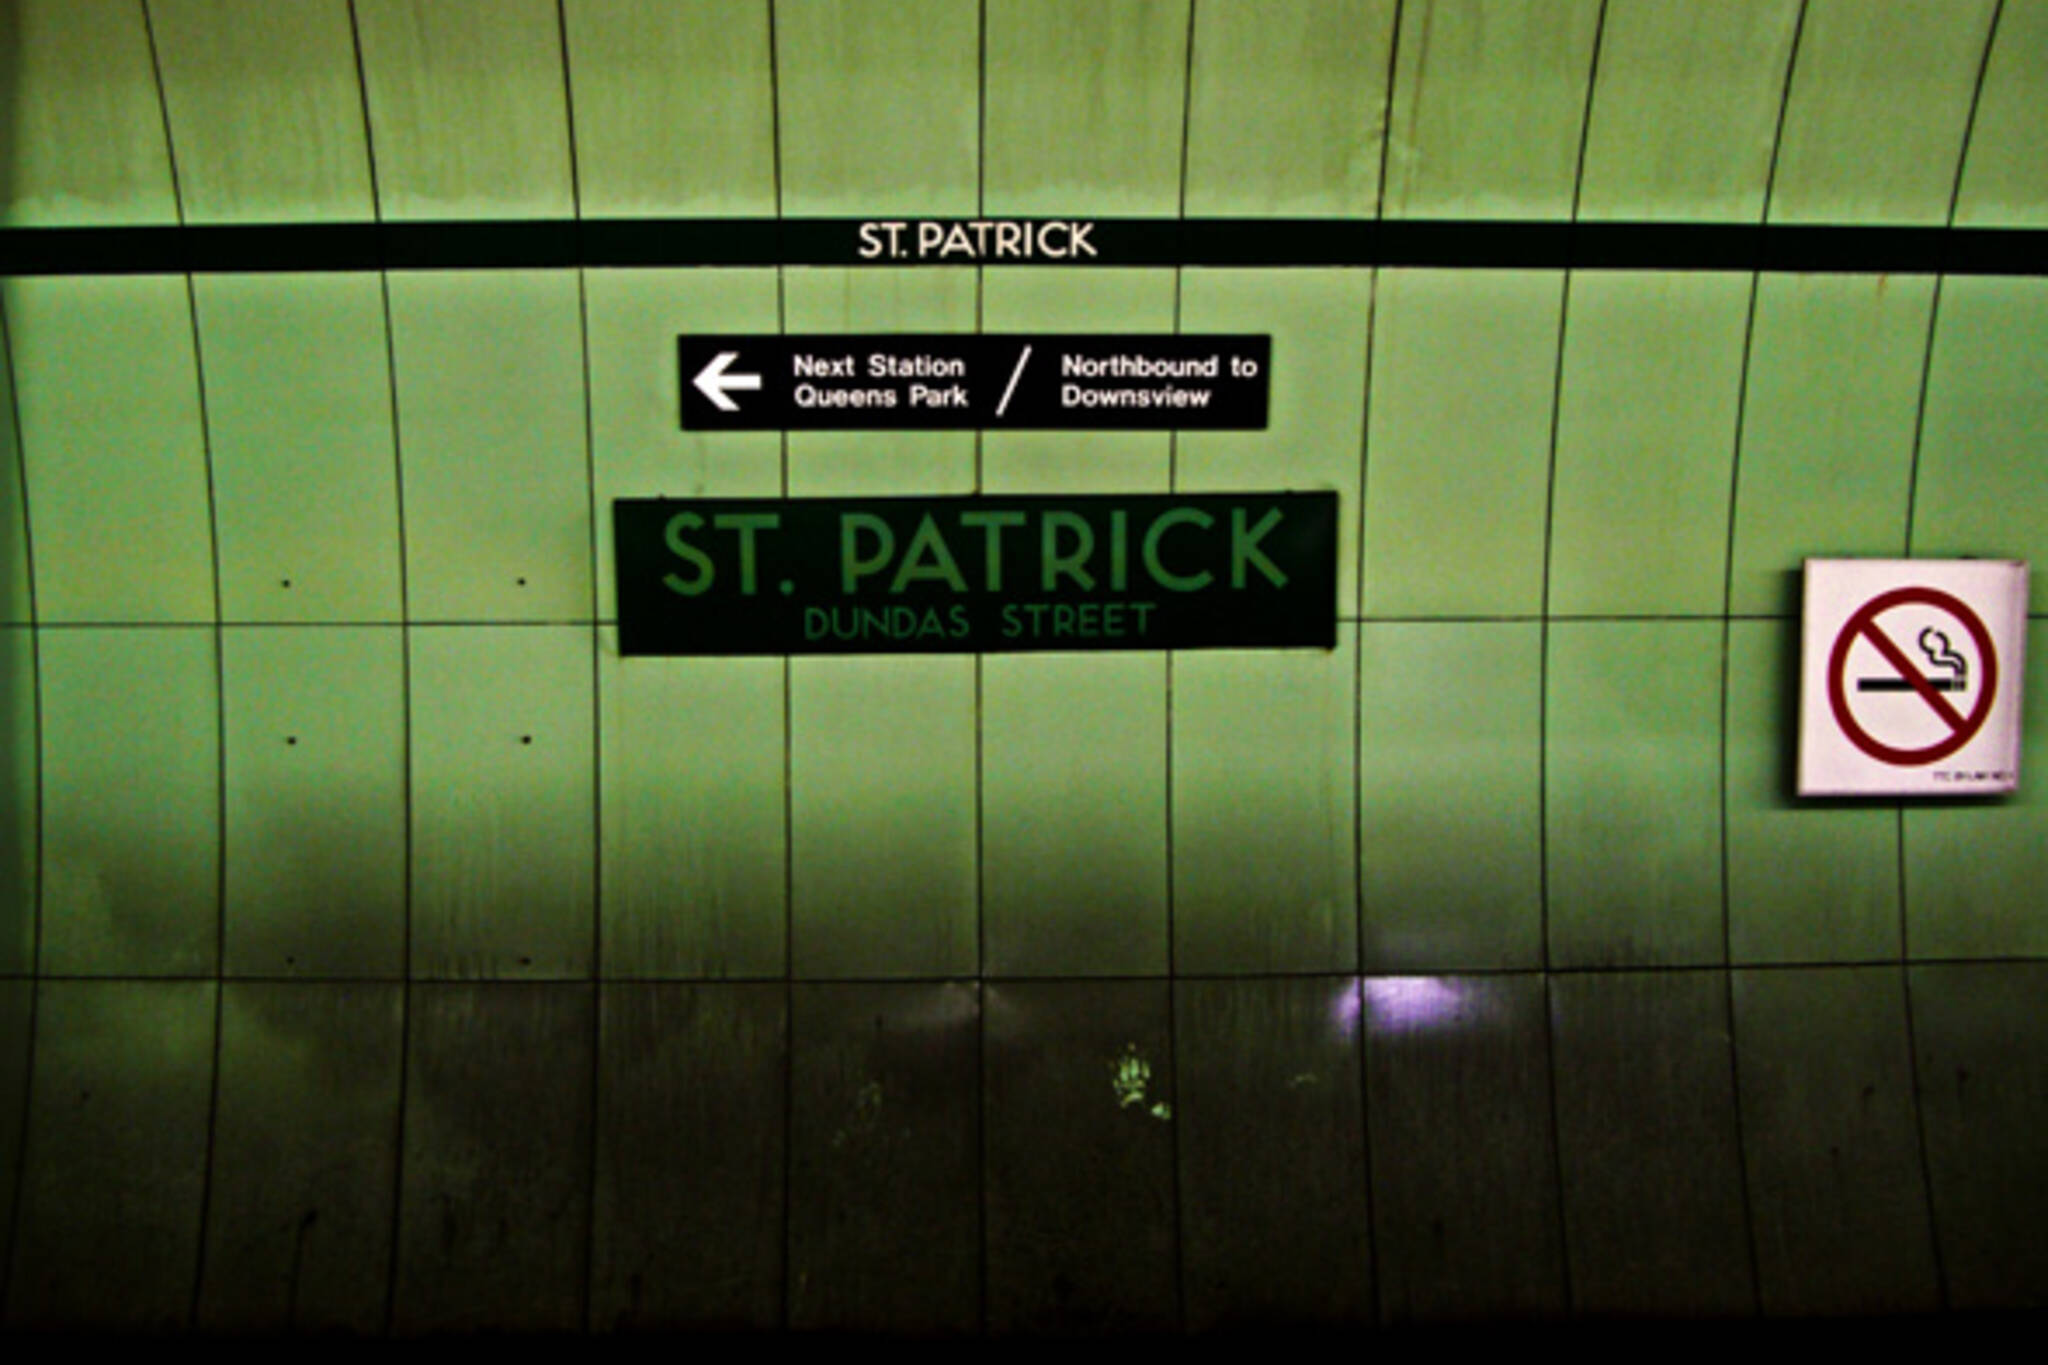 St. Patrick Station